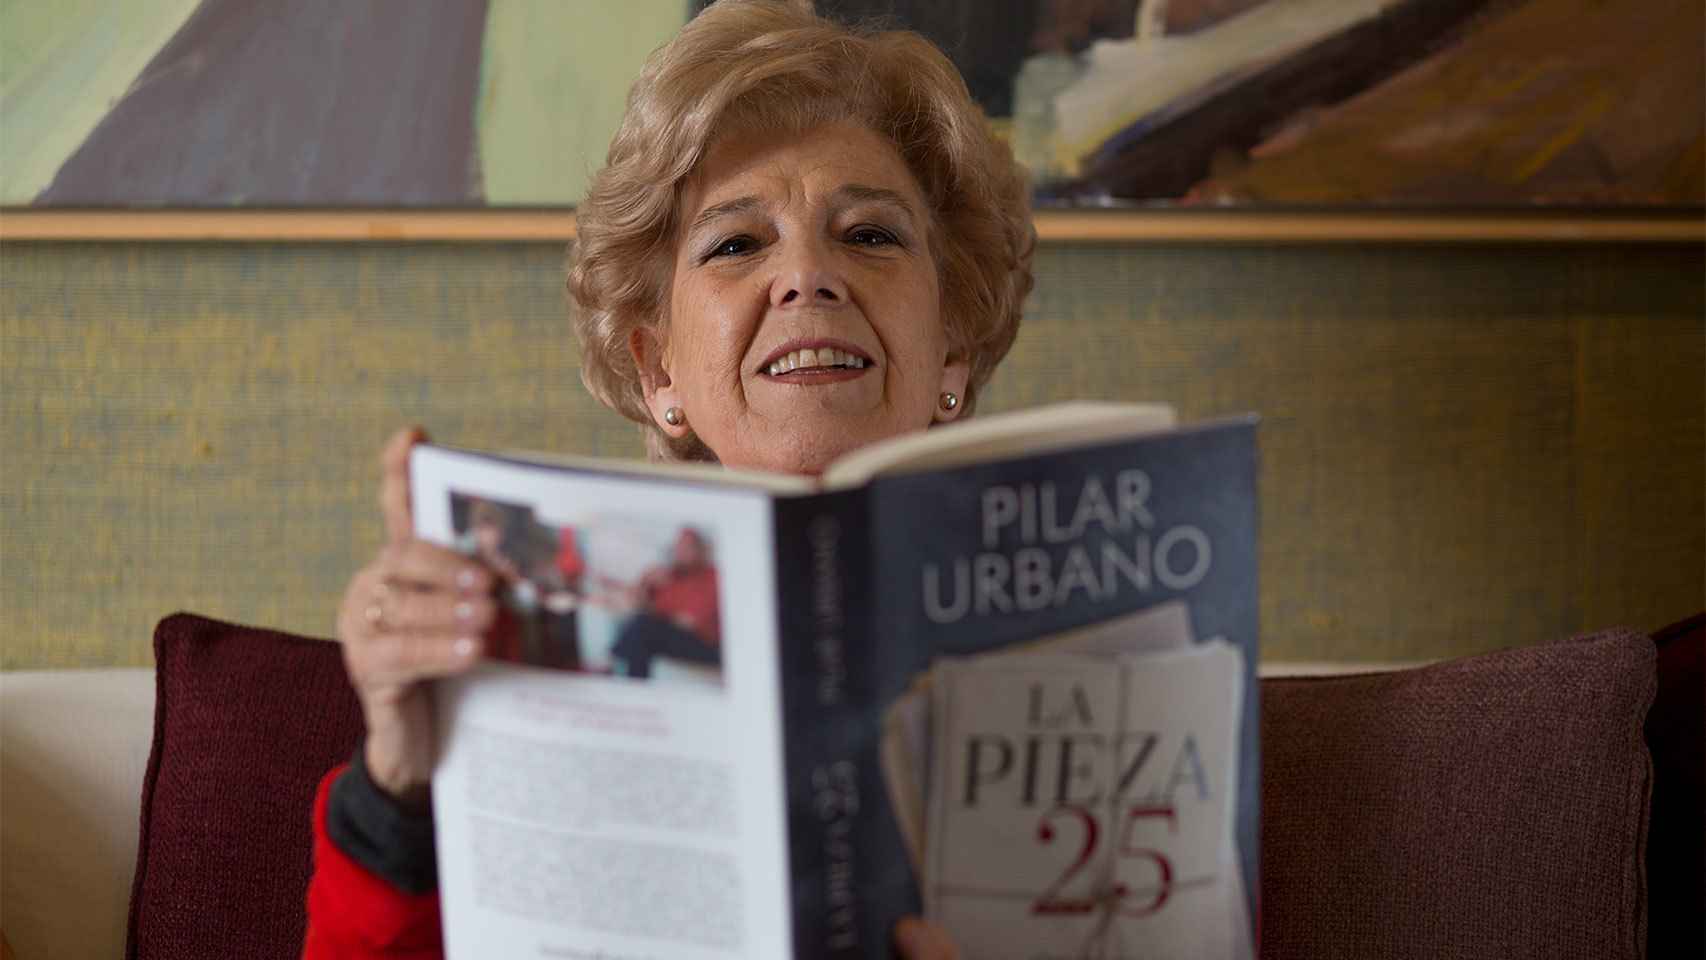 Pilar Urbano culmina su investigación durante tres años con la publicación de `La pieza 25´.